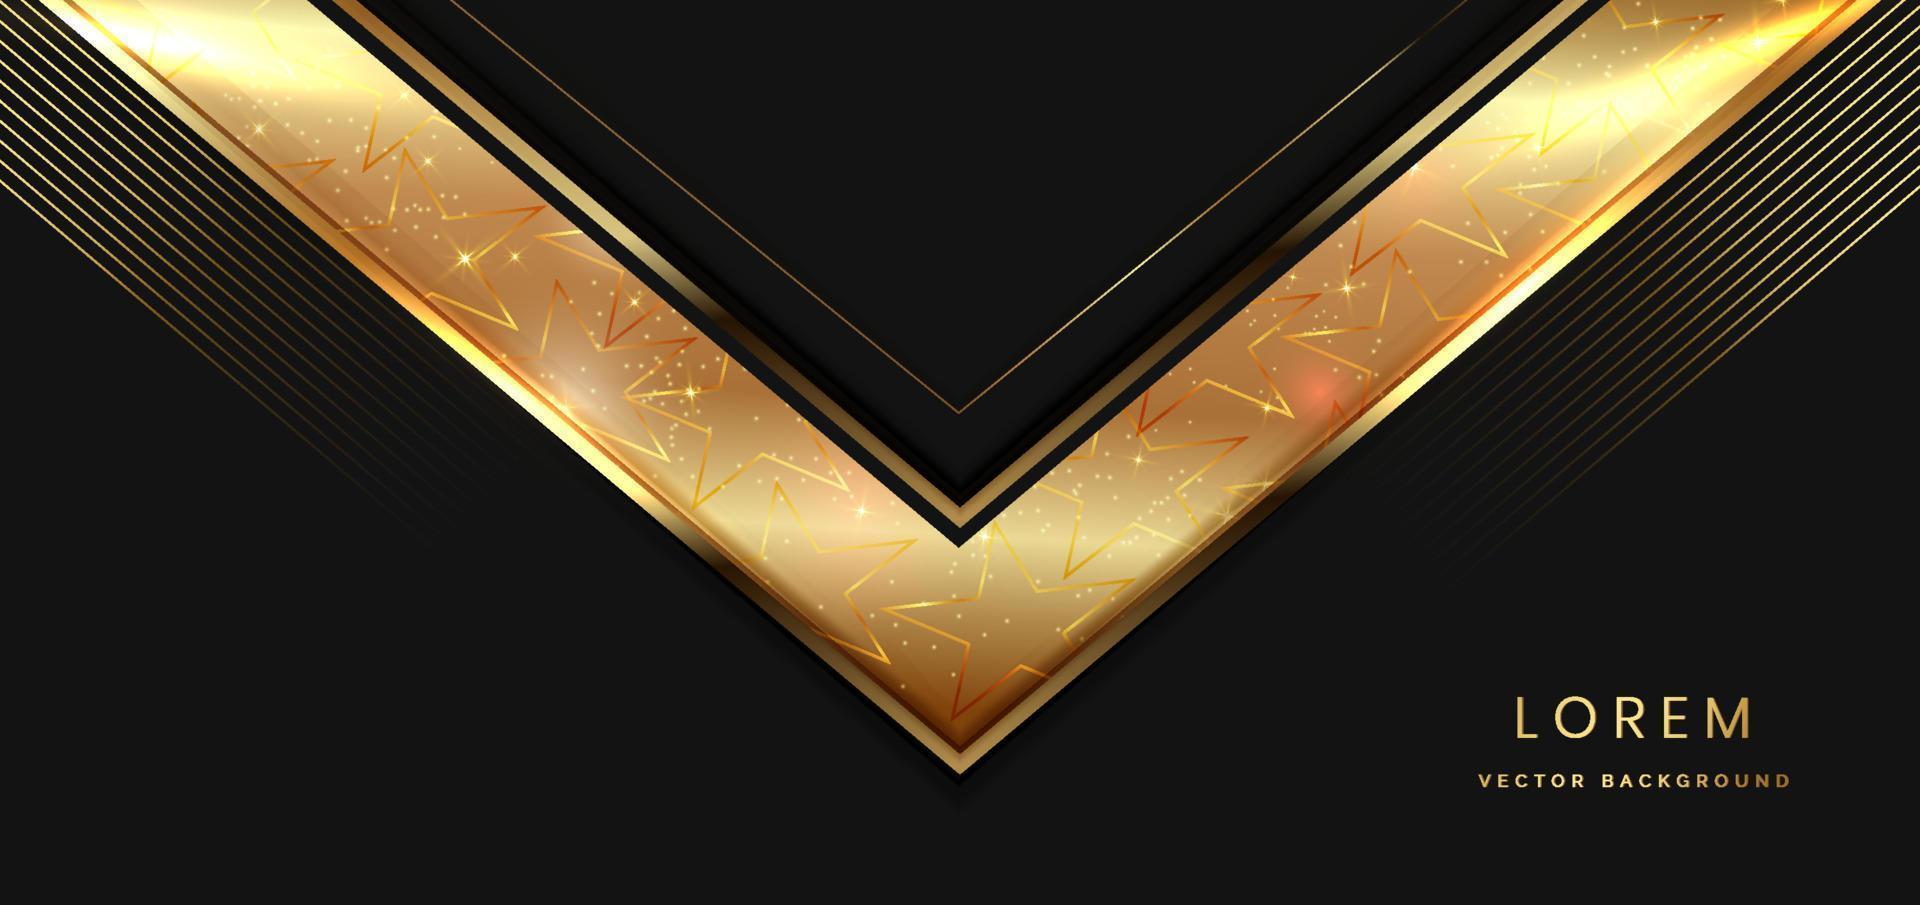 plantilla 3d de lujo elegante triángulo dorado con efecto de iluminación brillante sobre fondo negro. concepto de diseño de lujo con espacio para copiar texto. vector